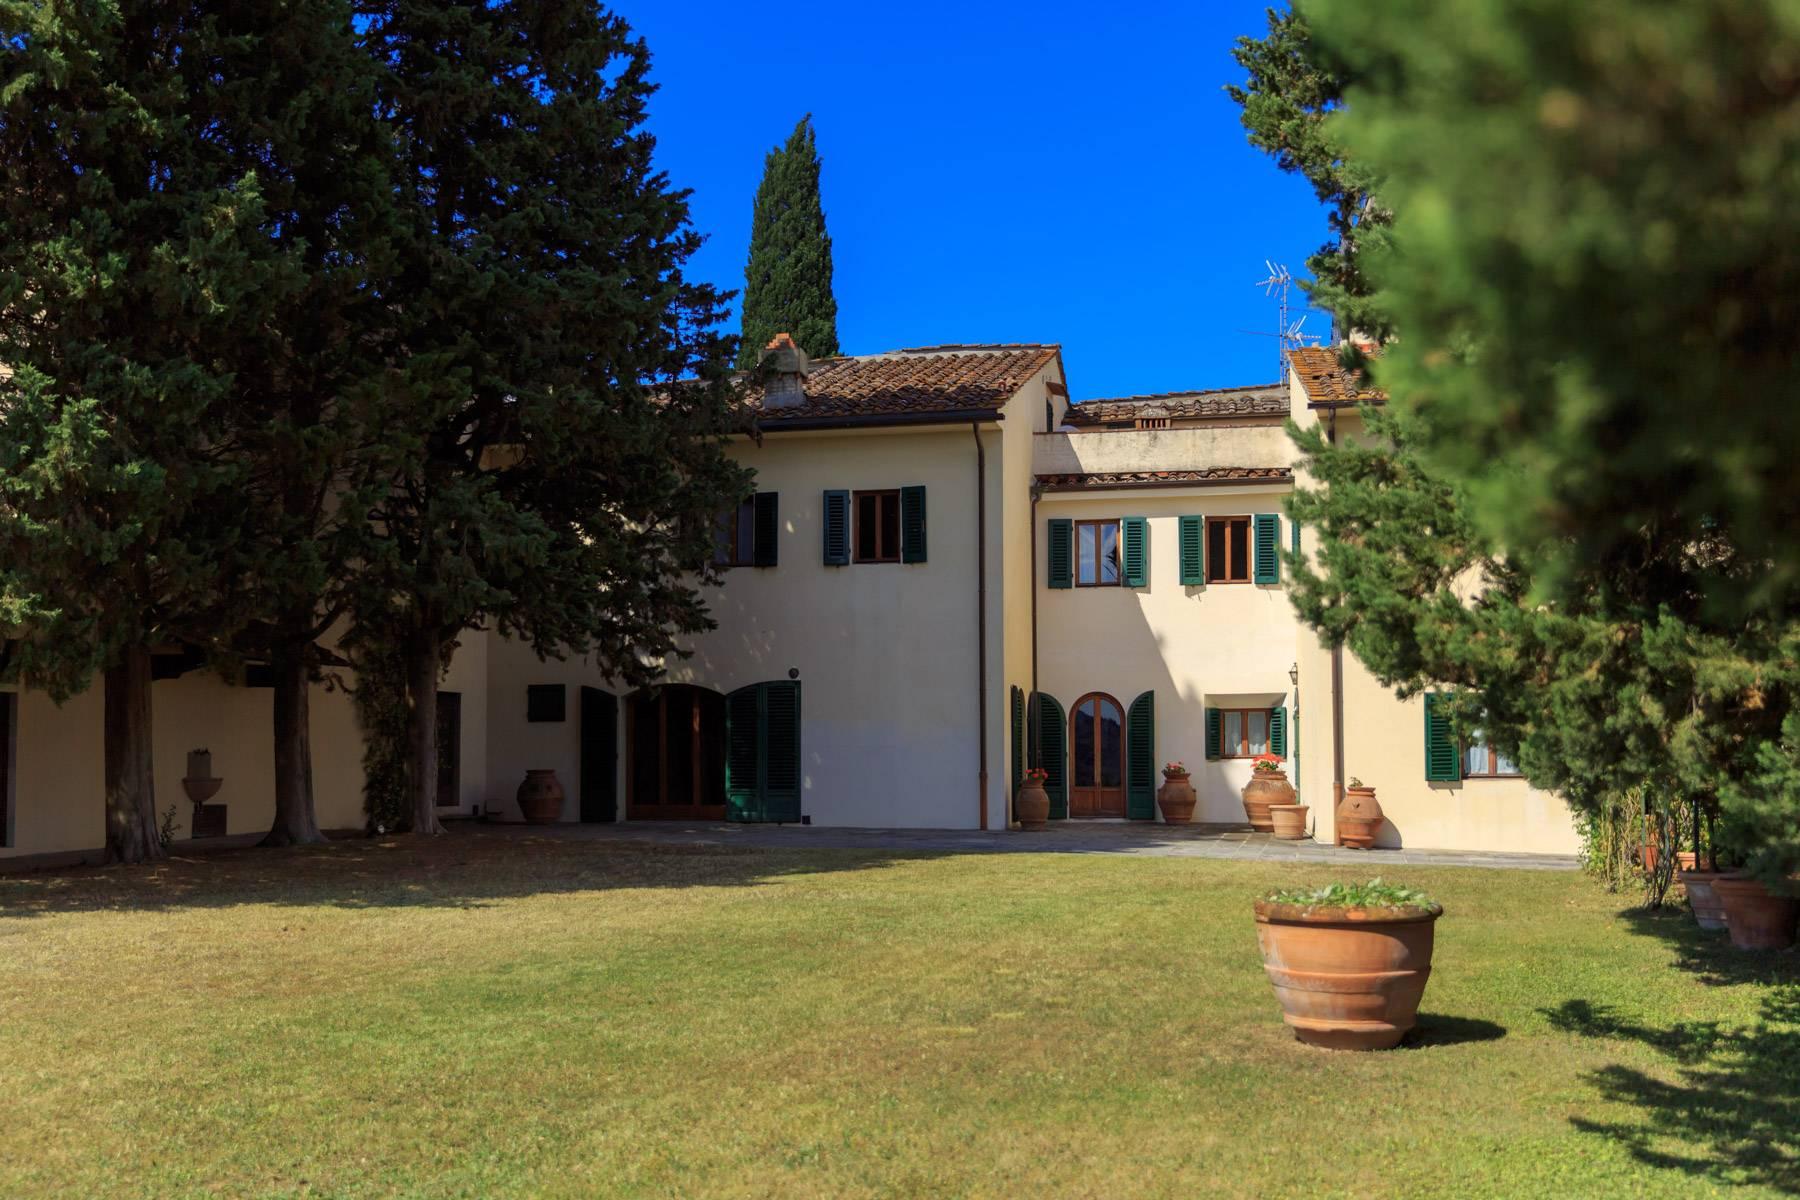 Grande villa antica con oliveto a 10 minuti da Firenze - 5